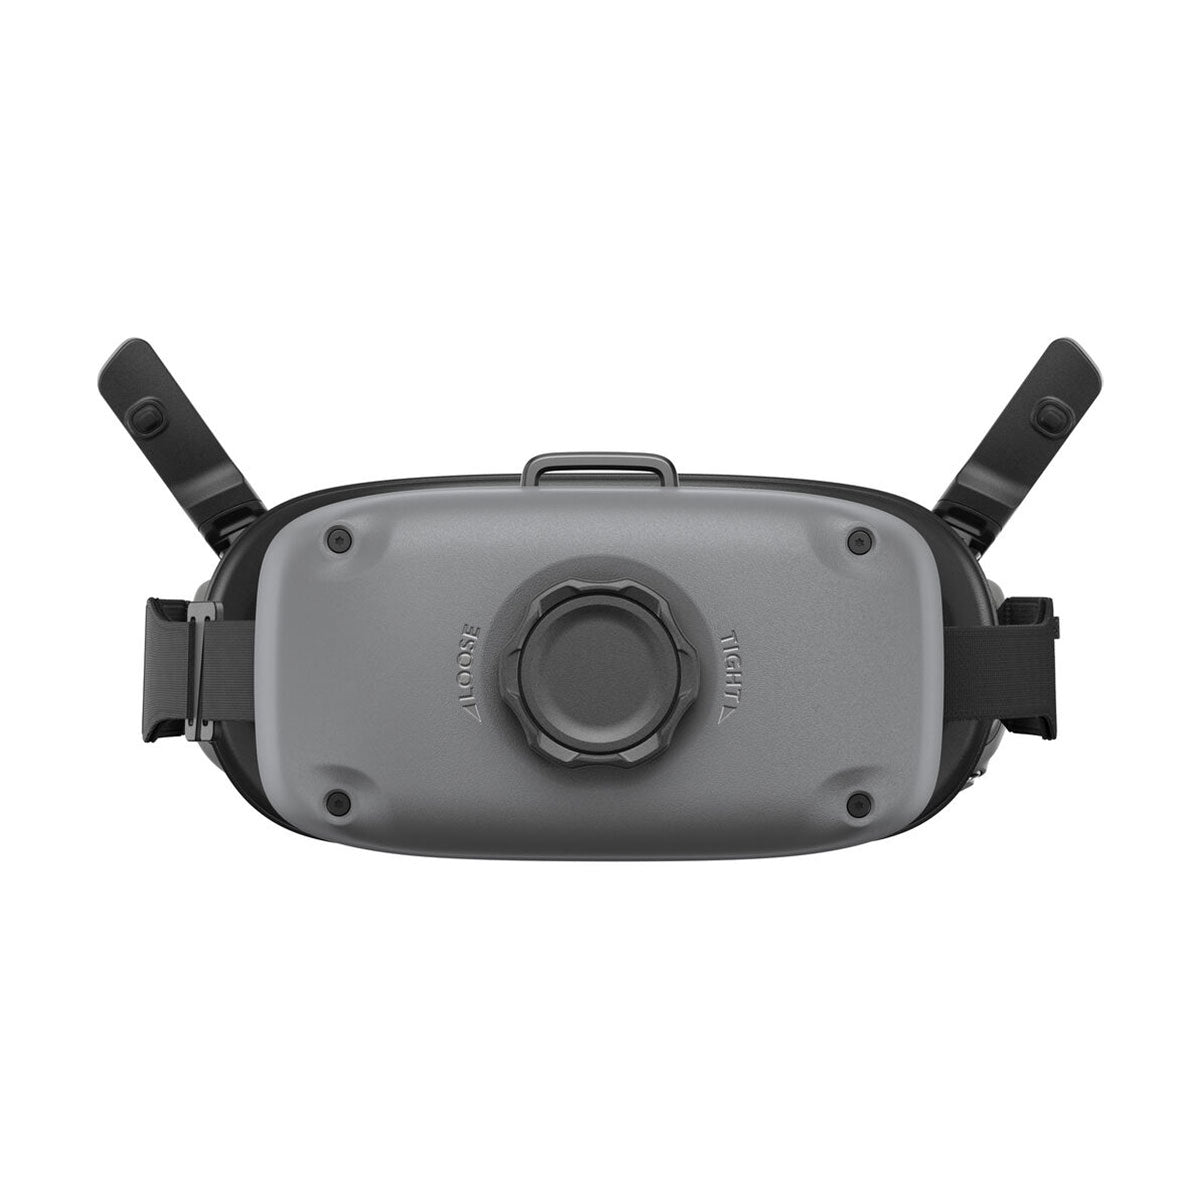 DJI Avata Explorer Combo FPV Drone with Goggles Integra